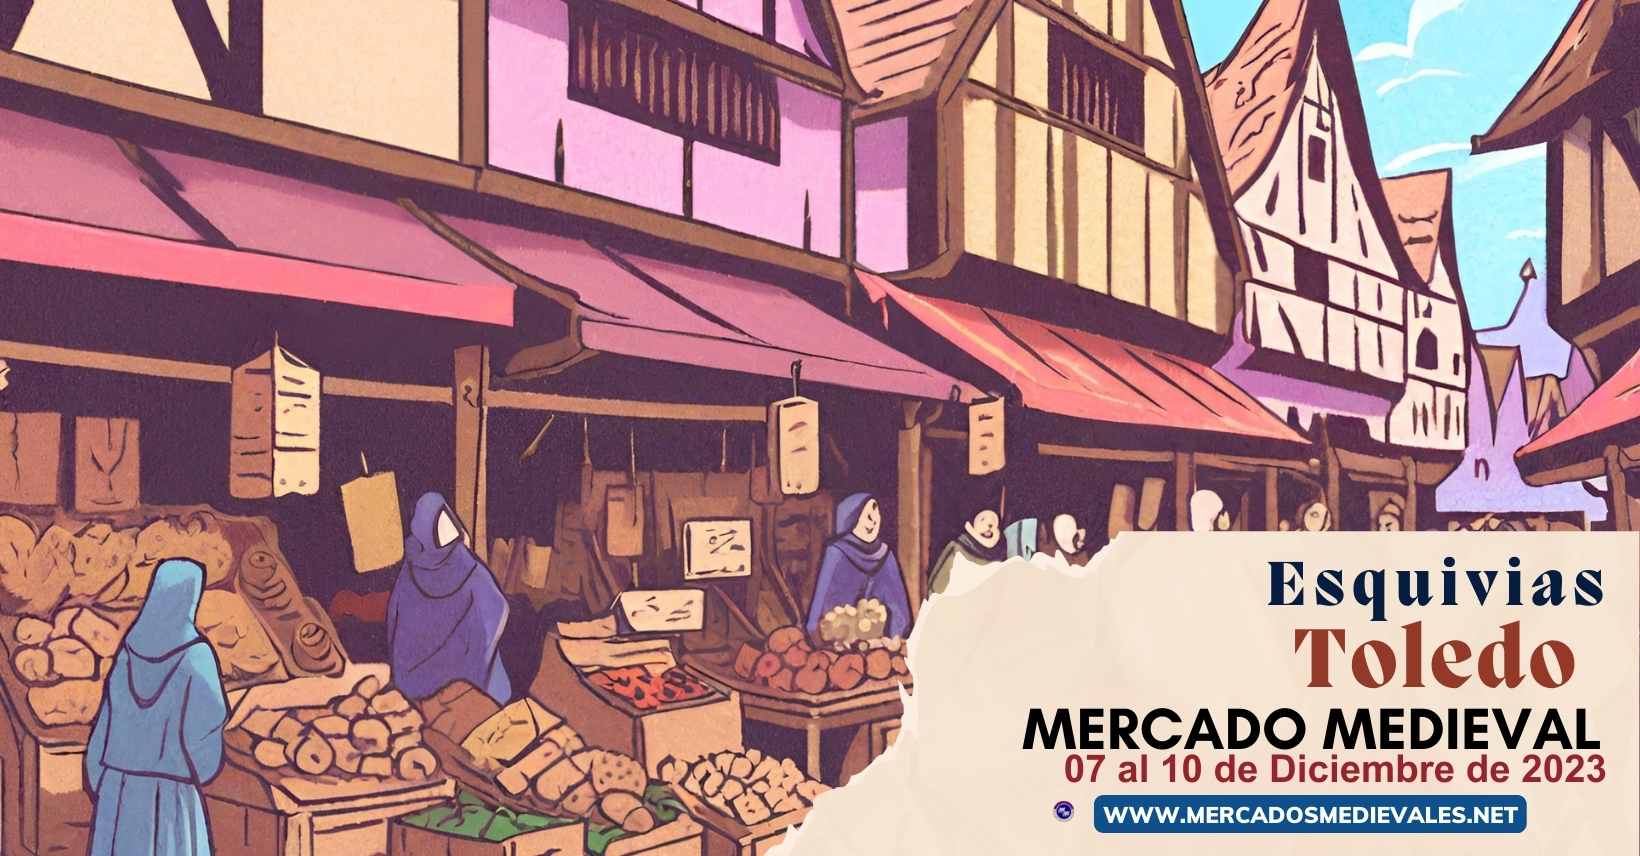 mercadosmedievales.net  - Mercado Medieval de Esquivias ( Toledo ) 2023 web